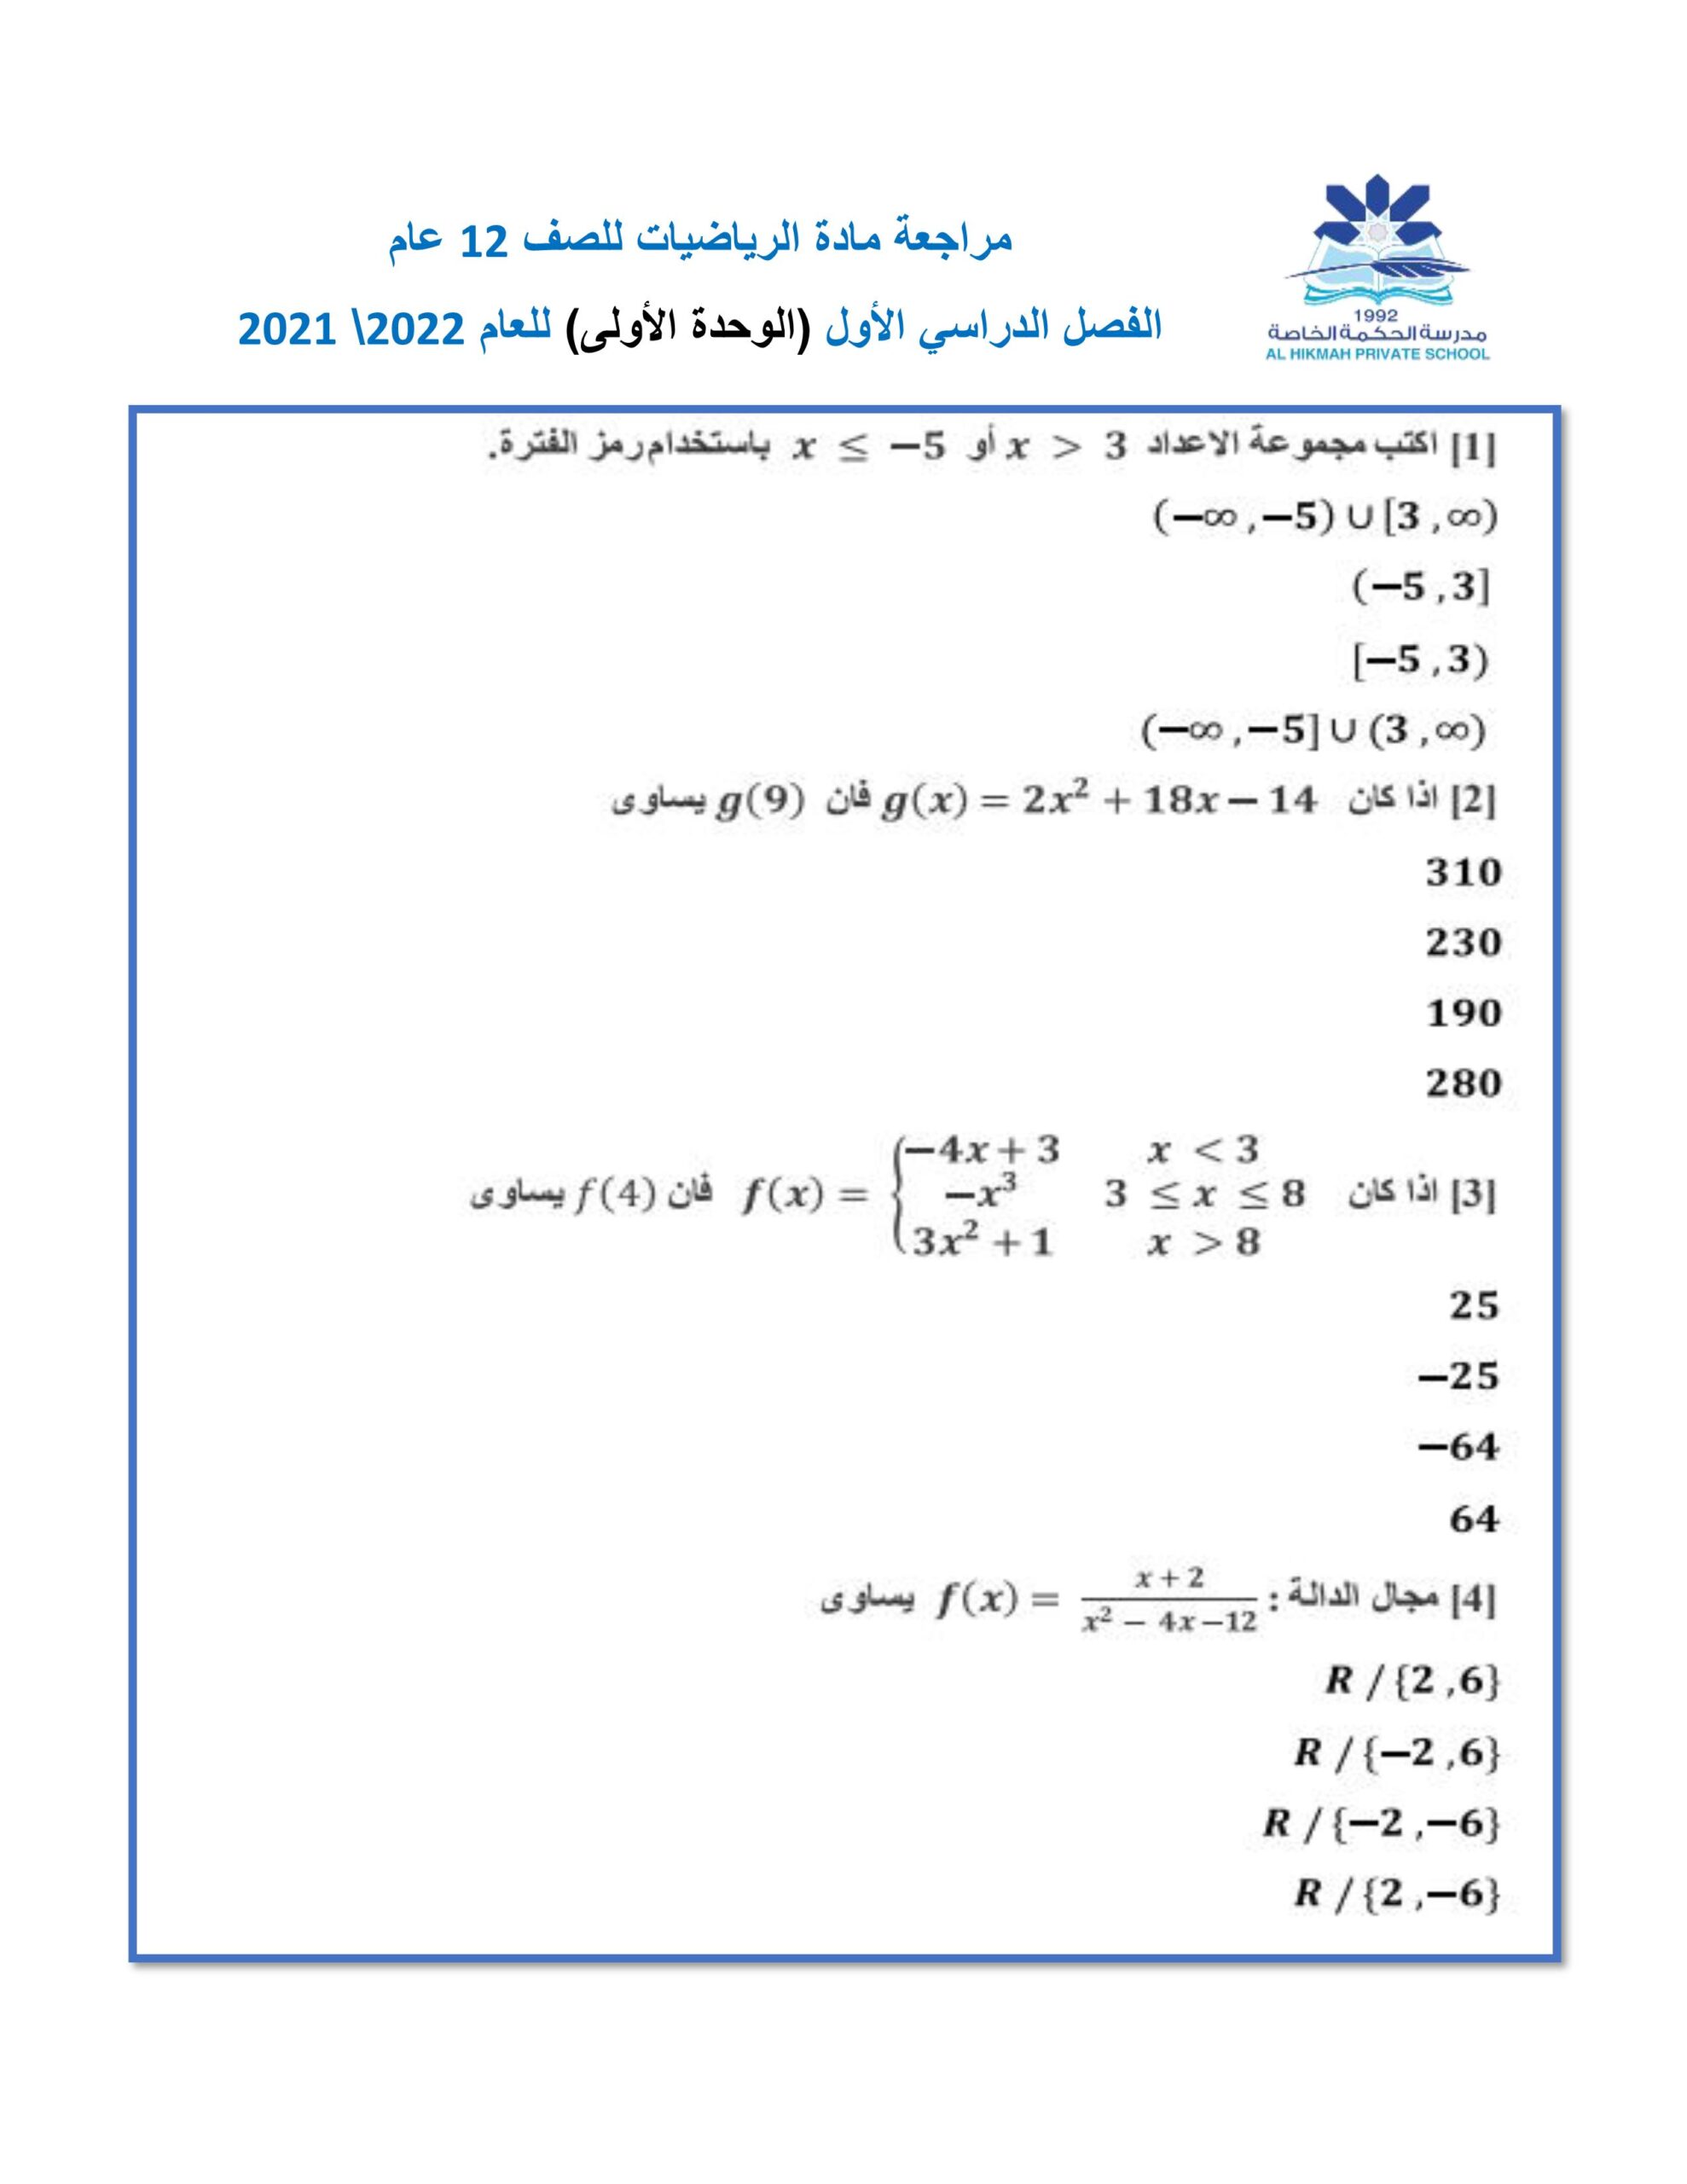 حل أوراق عمل مراجعة عامة الرياضيات المتكاملة الصف الثاني عشر عام 